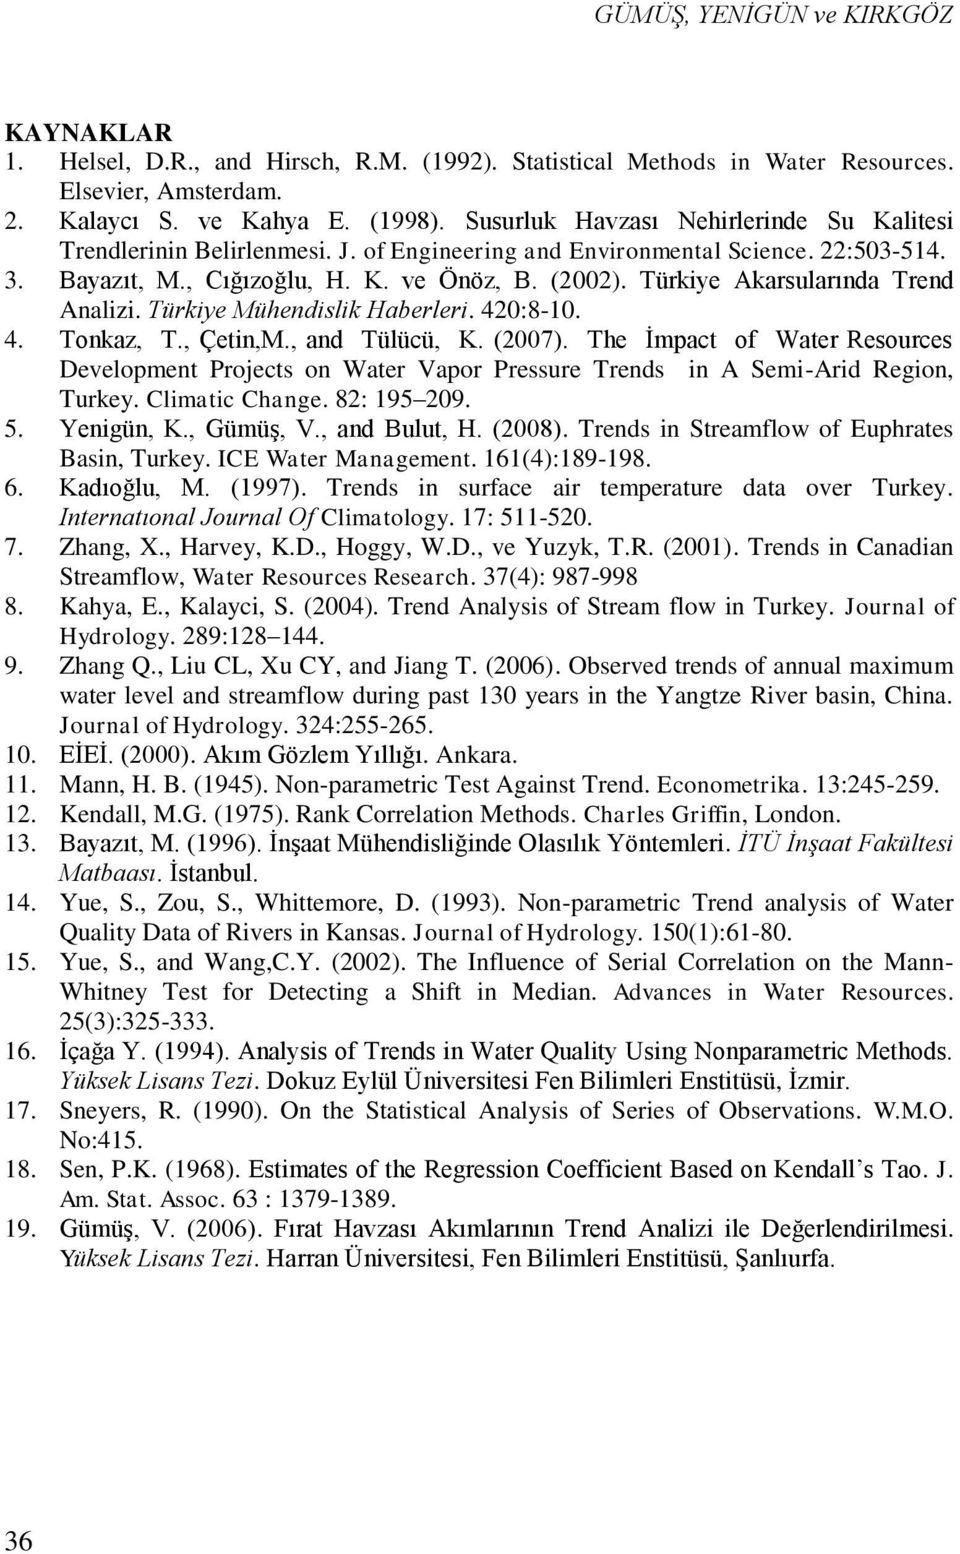 Türkiye Akarsularında Trend Analizi. Türkiye Mühendislik Haberleri. 420:8-10. 4. Tonkaz, T., Çetin,M., and Tülücü, K. (2007).